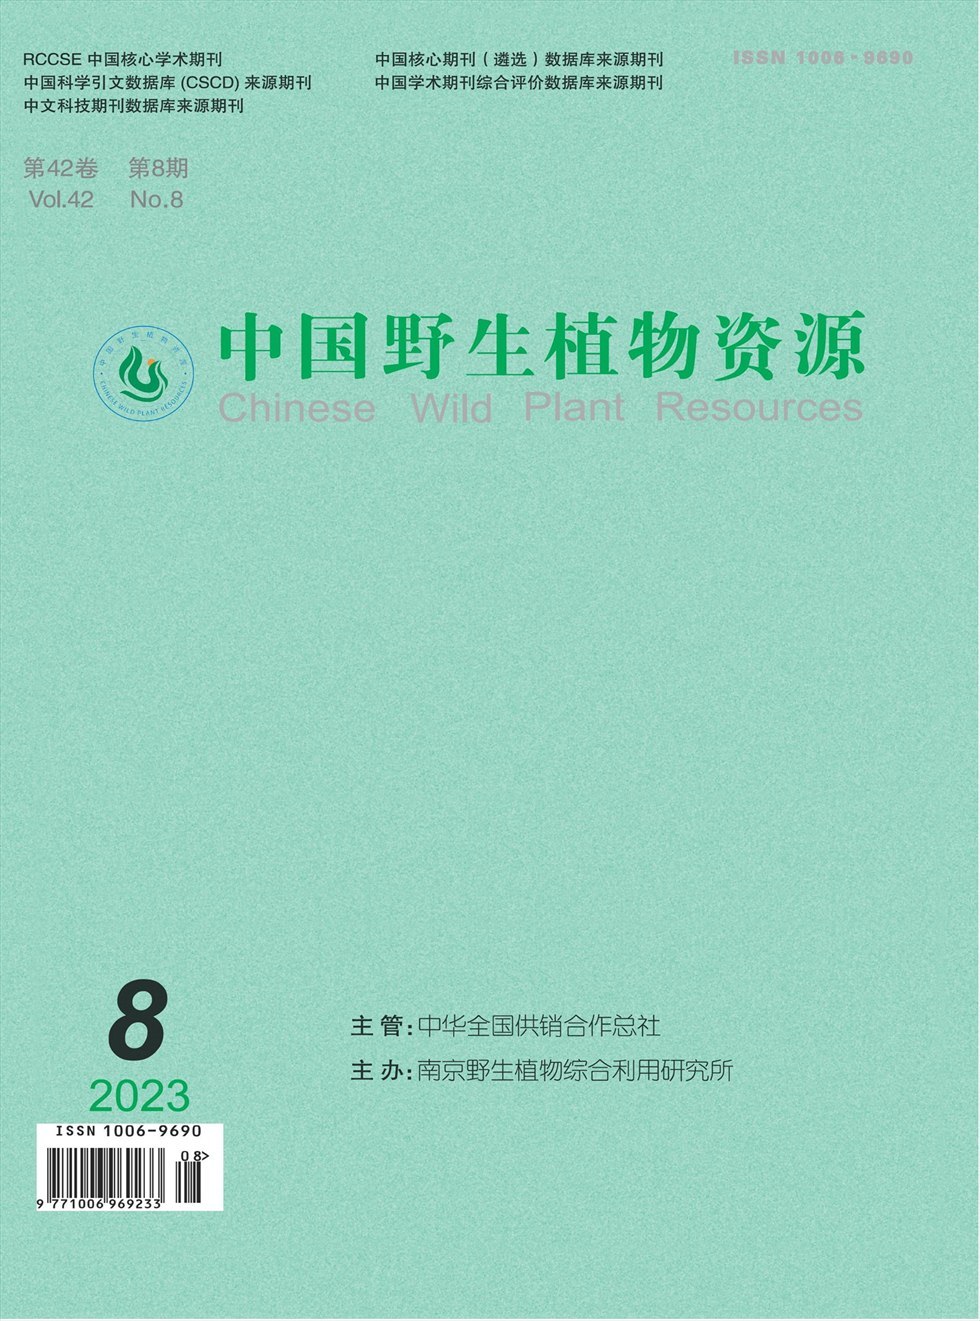 中国野生植物资源杂志封面